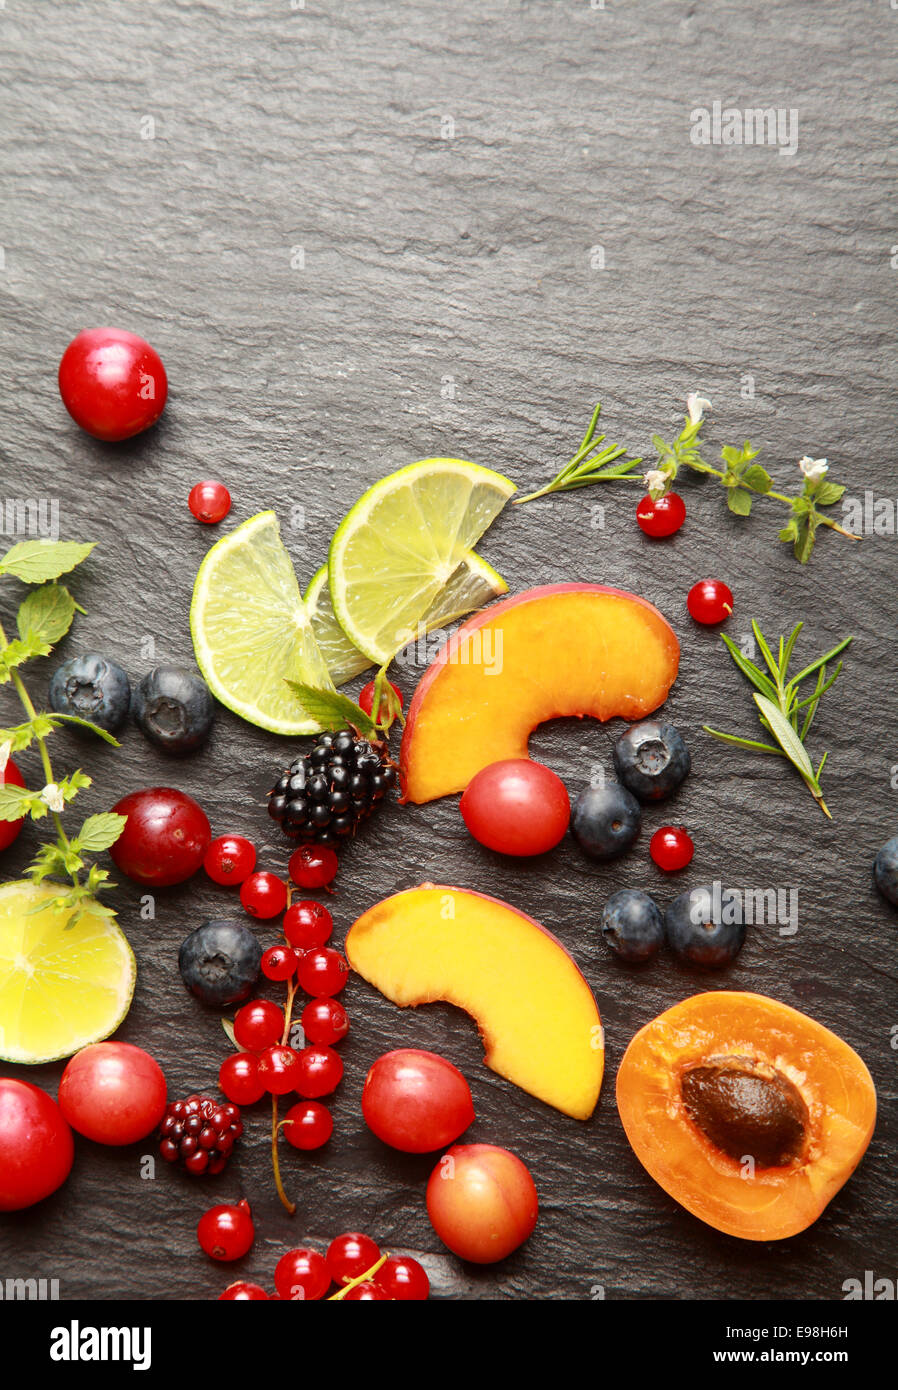 Bunte gesunde geschnittenes frisches Obst, verschiedene Beeren und Kräutern auf einen strukturierten dunklen grauen Schiefer Hintergrund mit Exemplar, Ansicht von oben Stockfoto